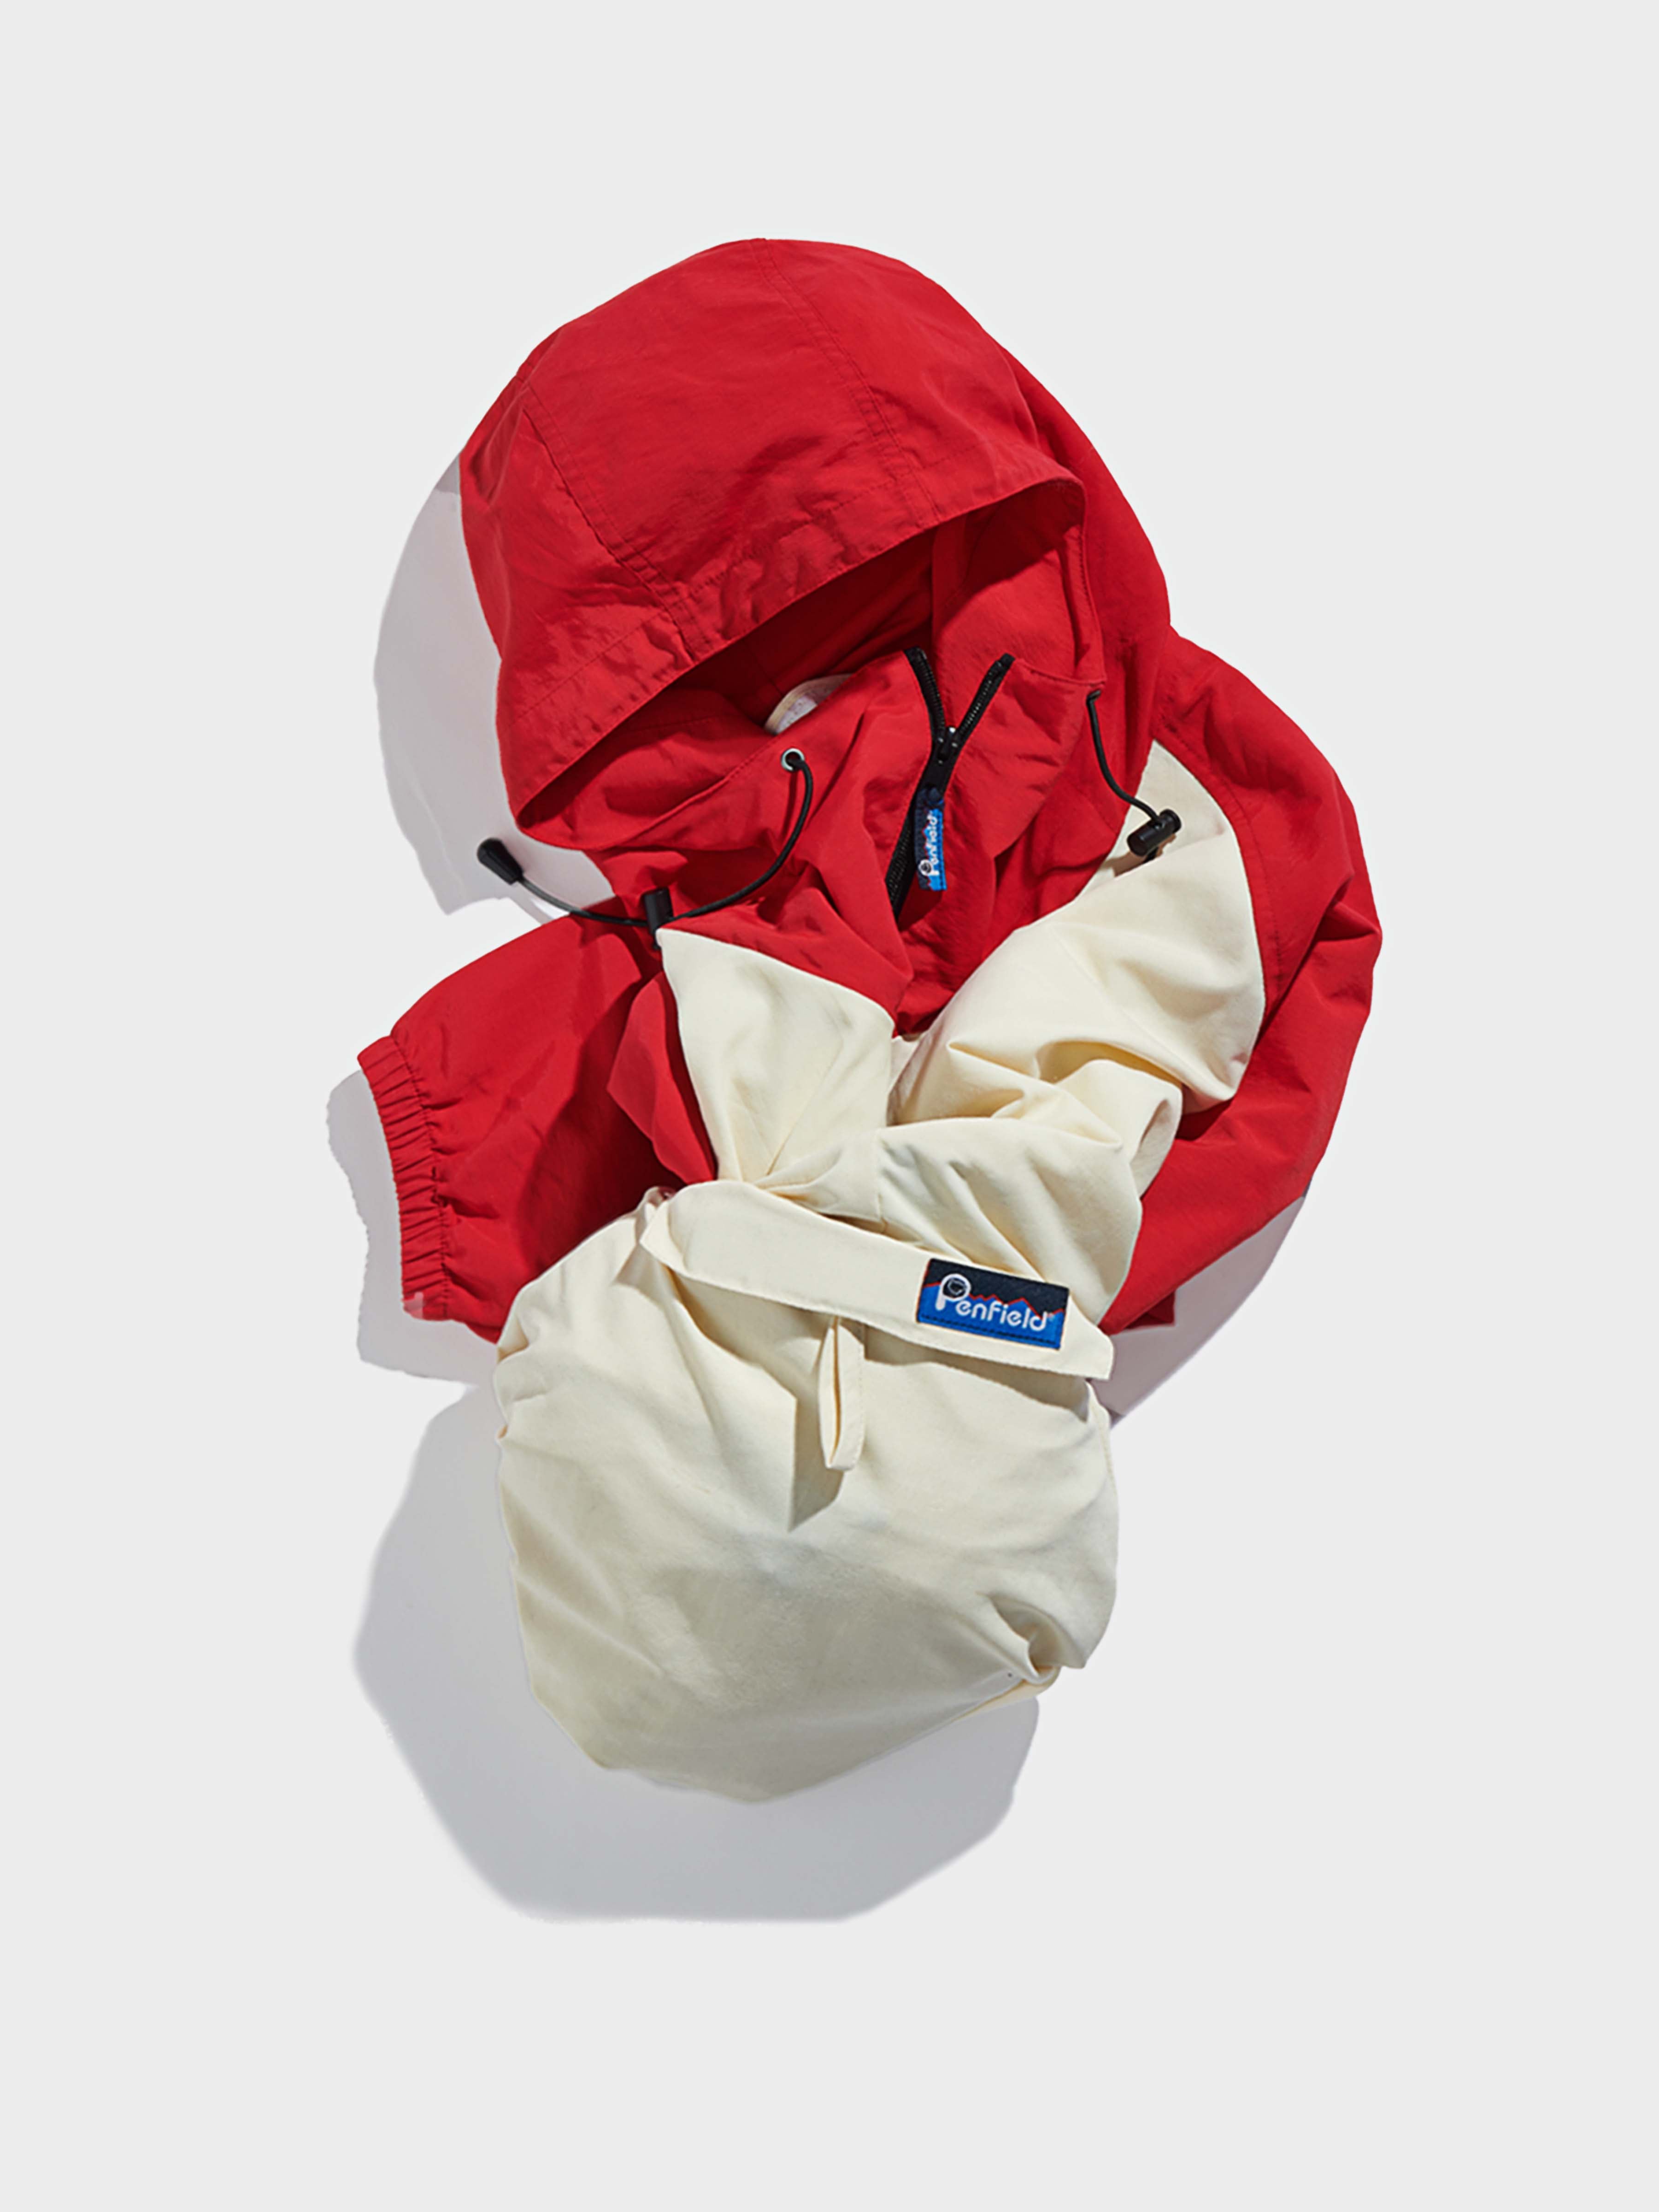 Pac Jac Windbreaker Jacket in True Red